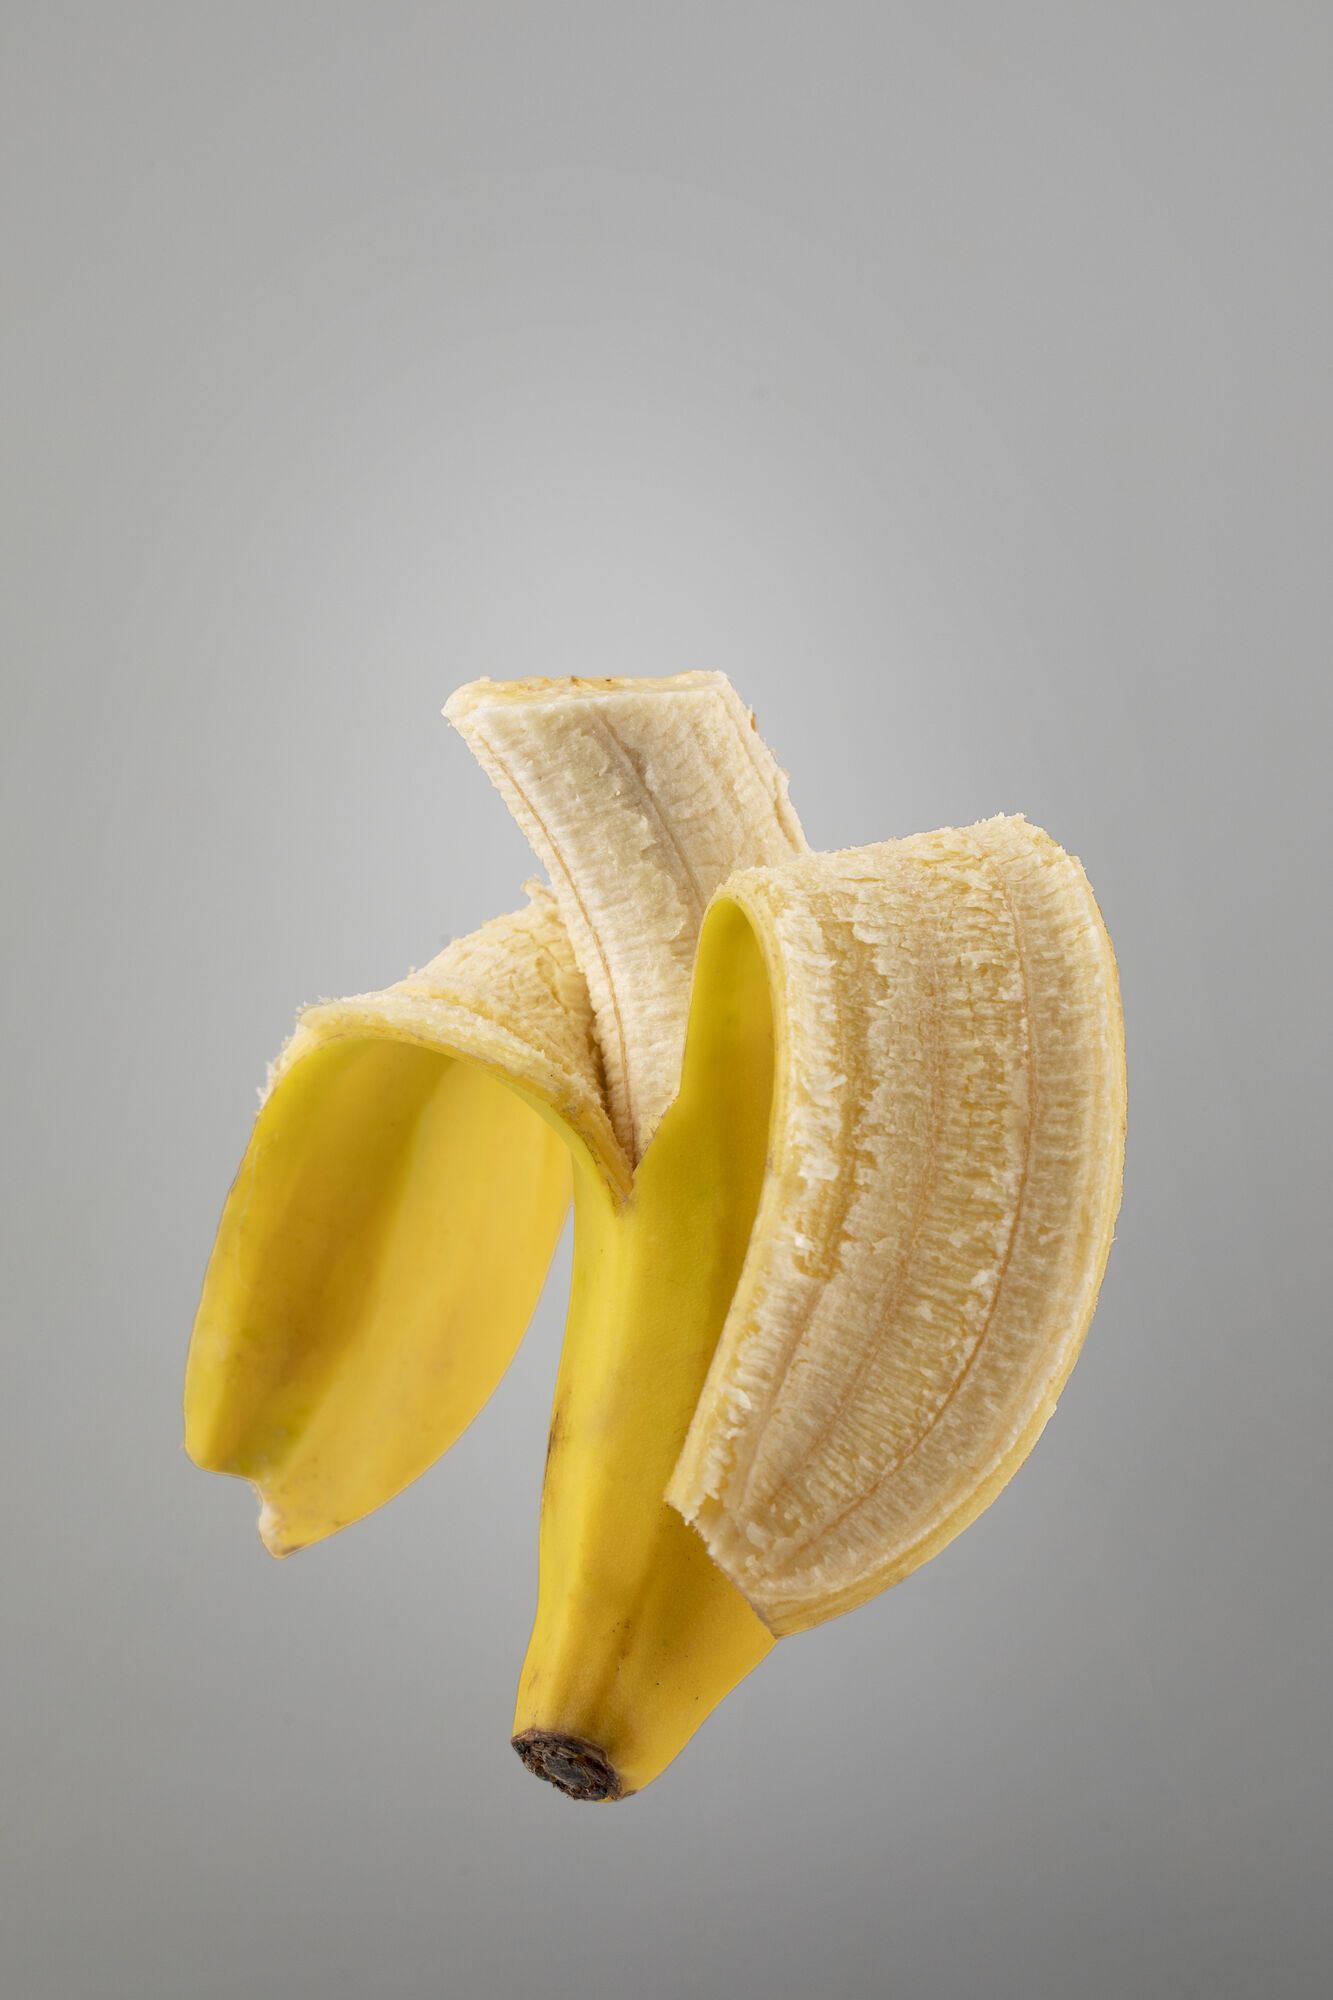 Как сохранить бананы желтыми и без темных пятен в течение 26 дней: действенный лайфхак